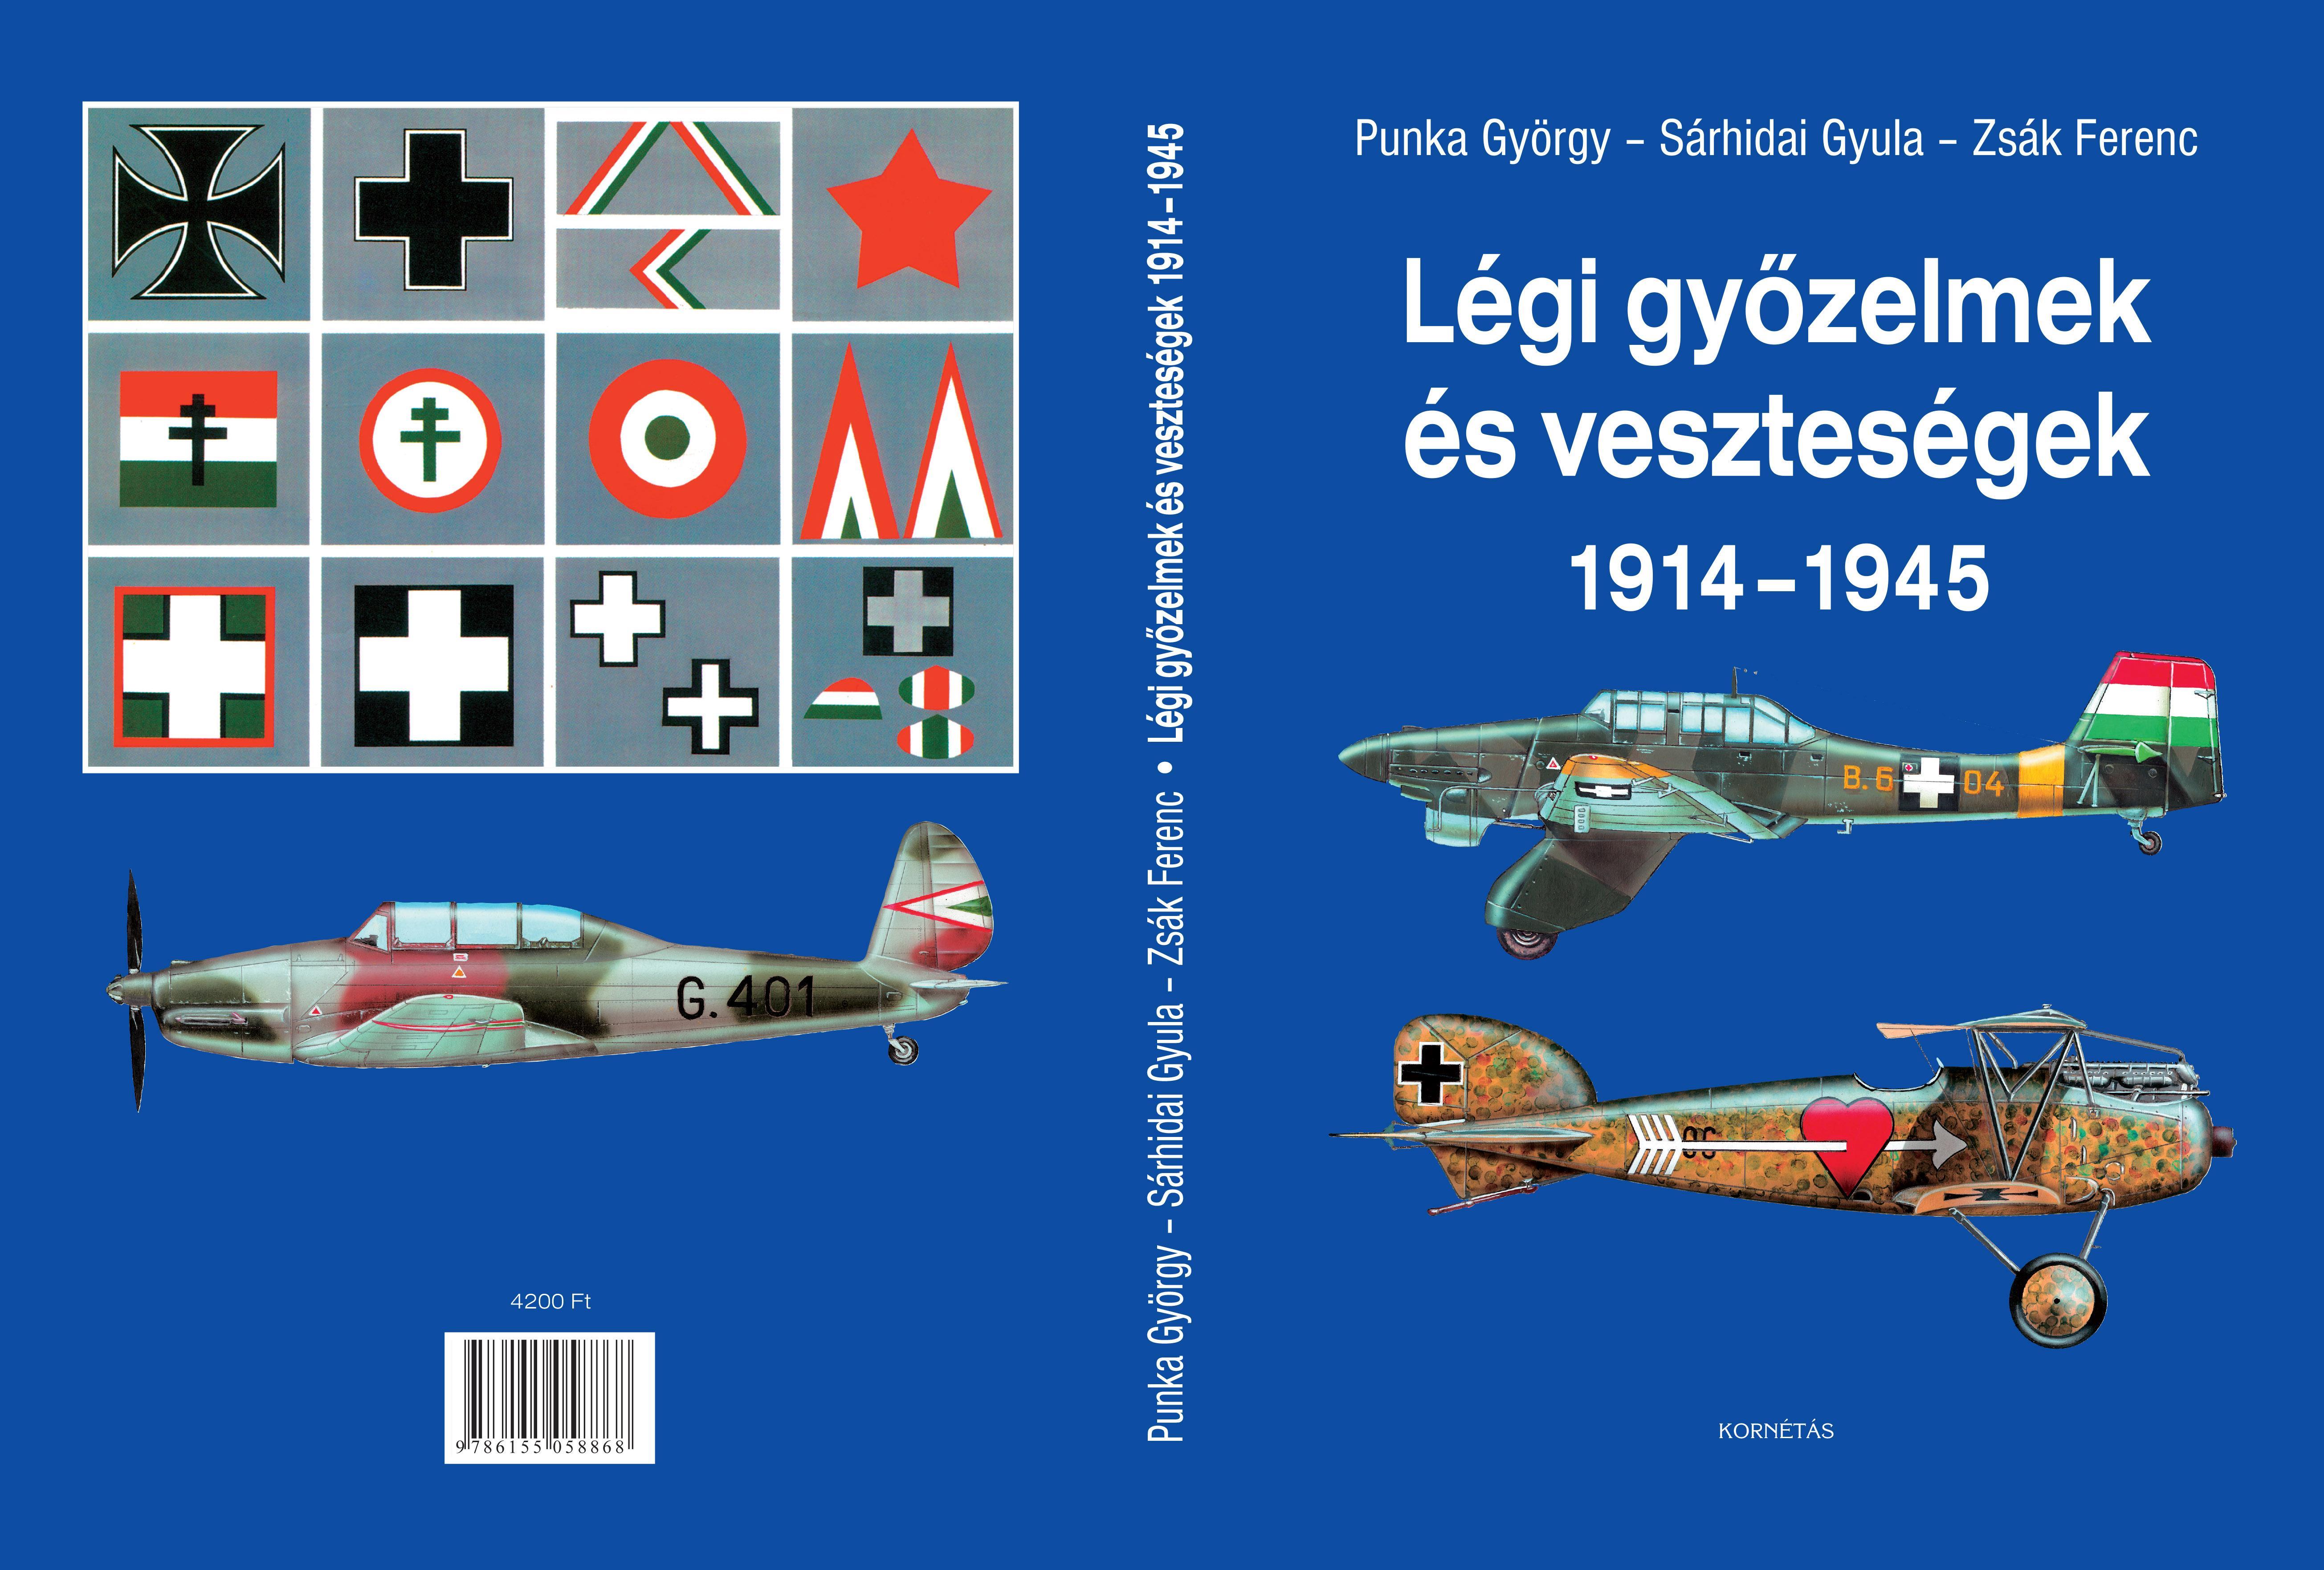 LÉGI GYŐZELMEK ÉS VESZTESÉGEK 1914-1945